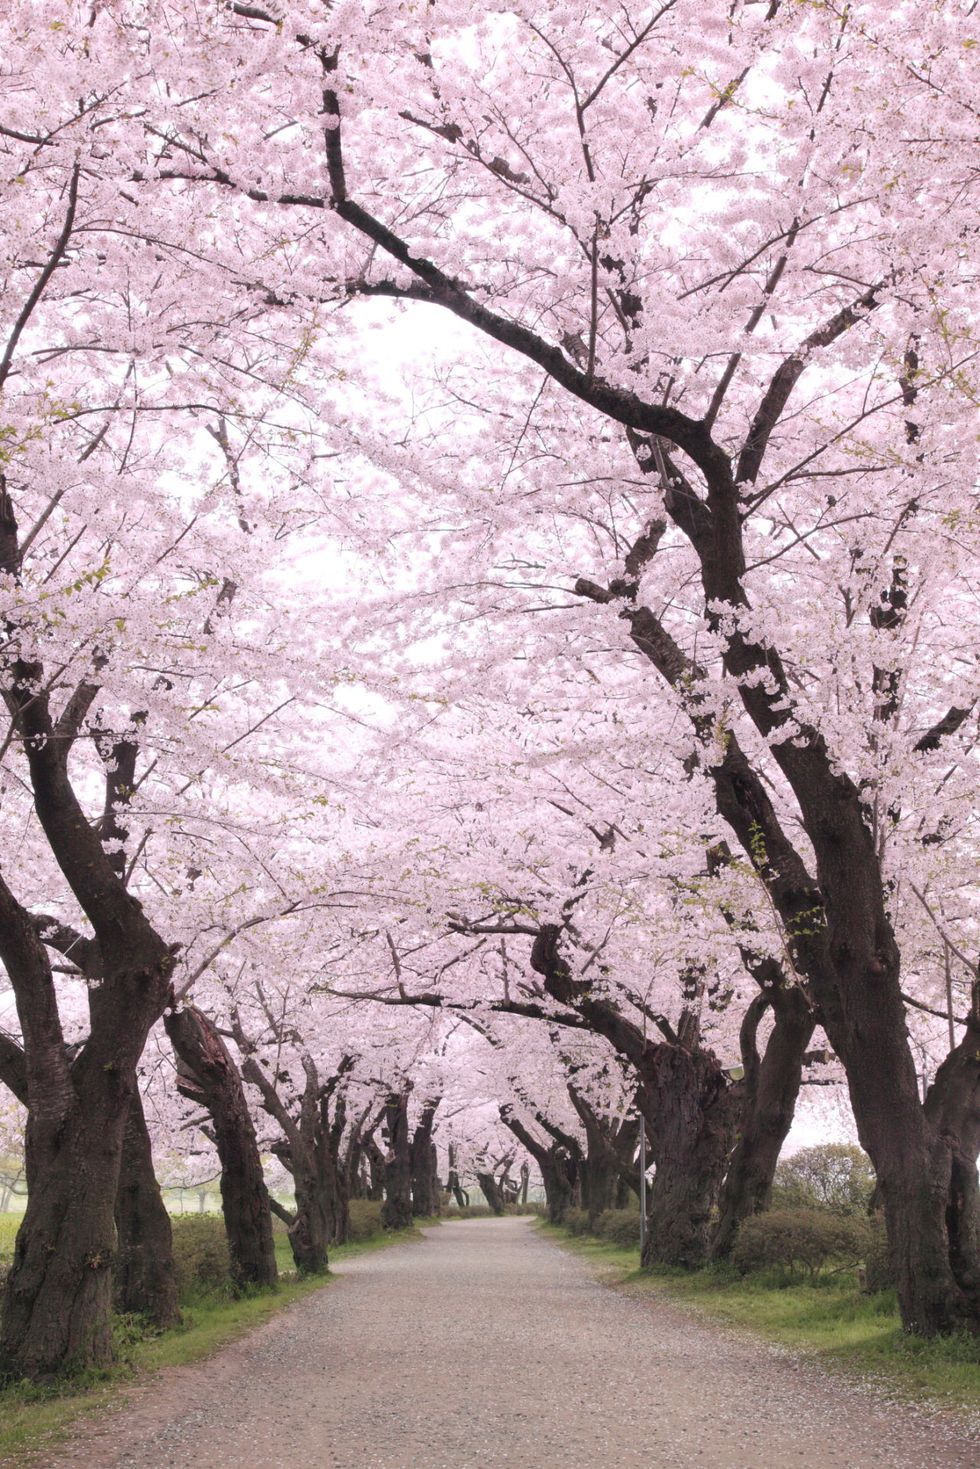 <p>Japan is het hele jaar door natuurlijk mooi, maar tijdens een paar werken in de lente is het extra mooi: de kersenbomen veranderen in een zee van&nbsp;roze kleuren. Dit kun je trouwens ook dichter bij huis bekijken: In het Amsterdamse bos is ook een <a href="http://www.amsterdamsebos.nl/natuur/natuurgebieden/bloesempark/" data-tracking-id="recirc-text-link">Japanse bloesemtuin</a>.</p>